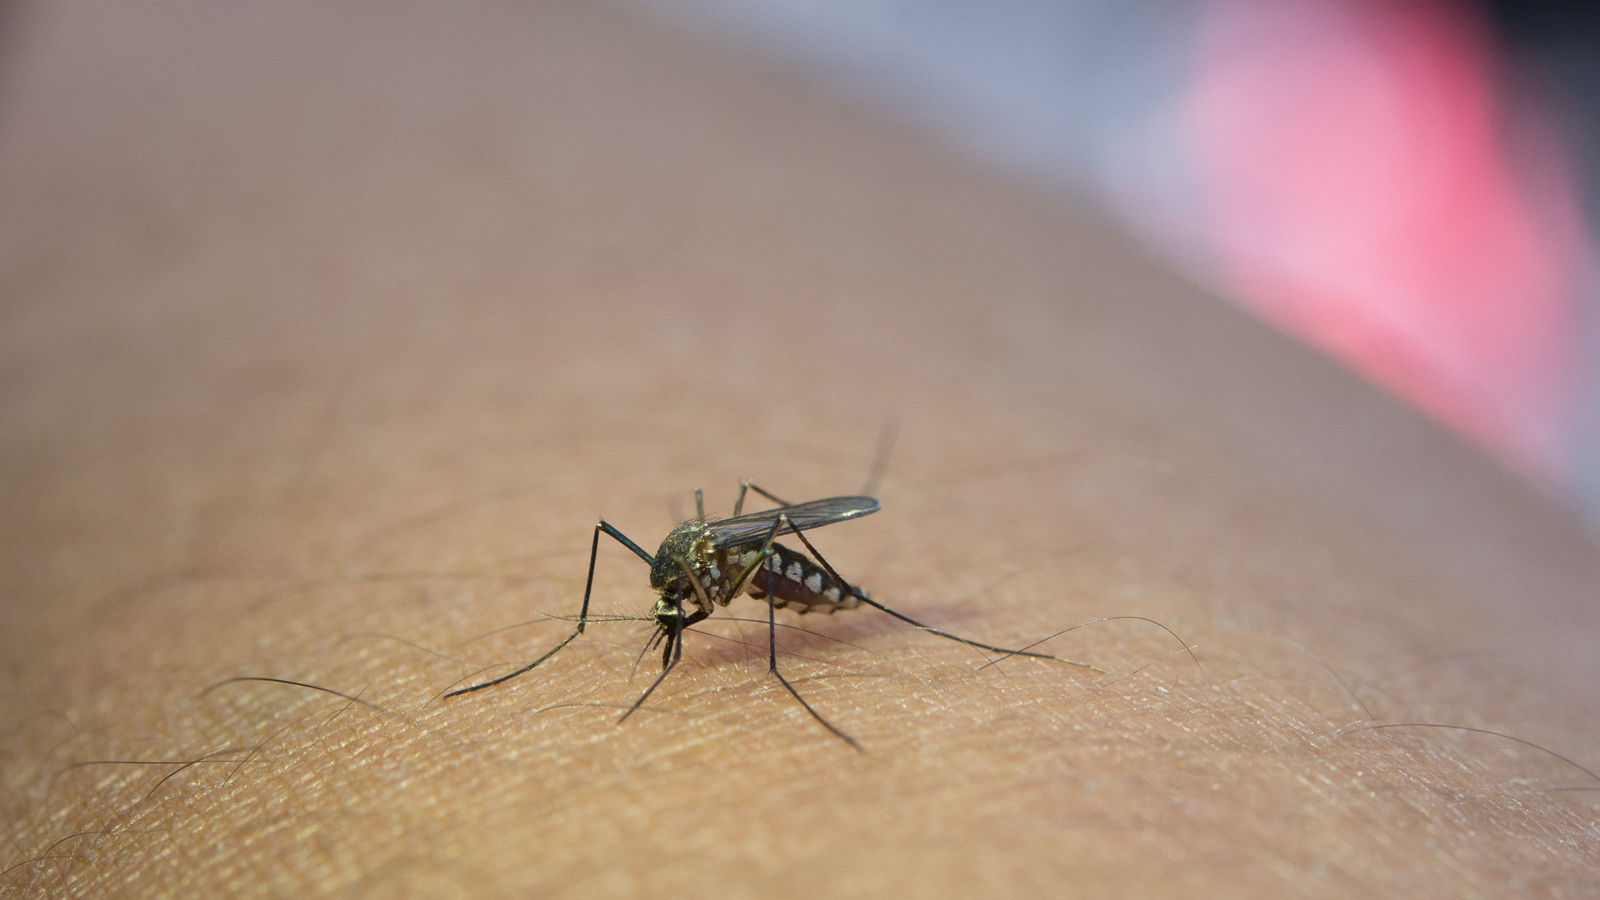 Sốt xuất huyết dengue là bệnh phổ biến đa số nước thuộc khu vực khí hậu nhiệt đới và cận nhiệt đới. Một nghiên cứu ước tính rằng 50 triệu ca xảy ra mỗi năm. Các triệu chứng có thể nhẹ và bao gồm: sốt, phát ban, đau cơ và khớp...